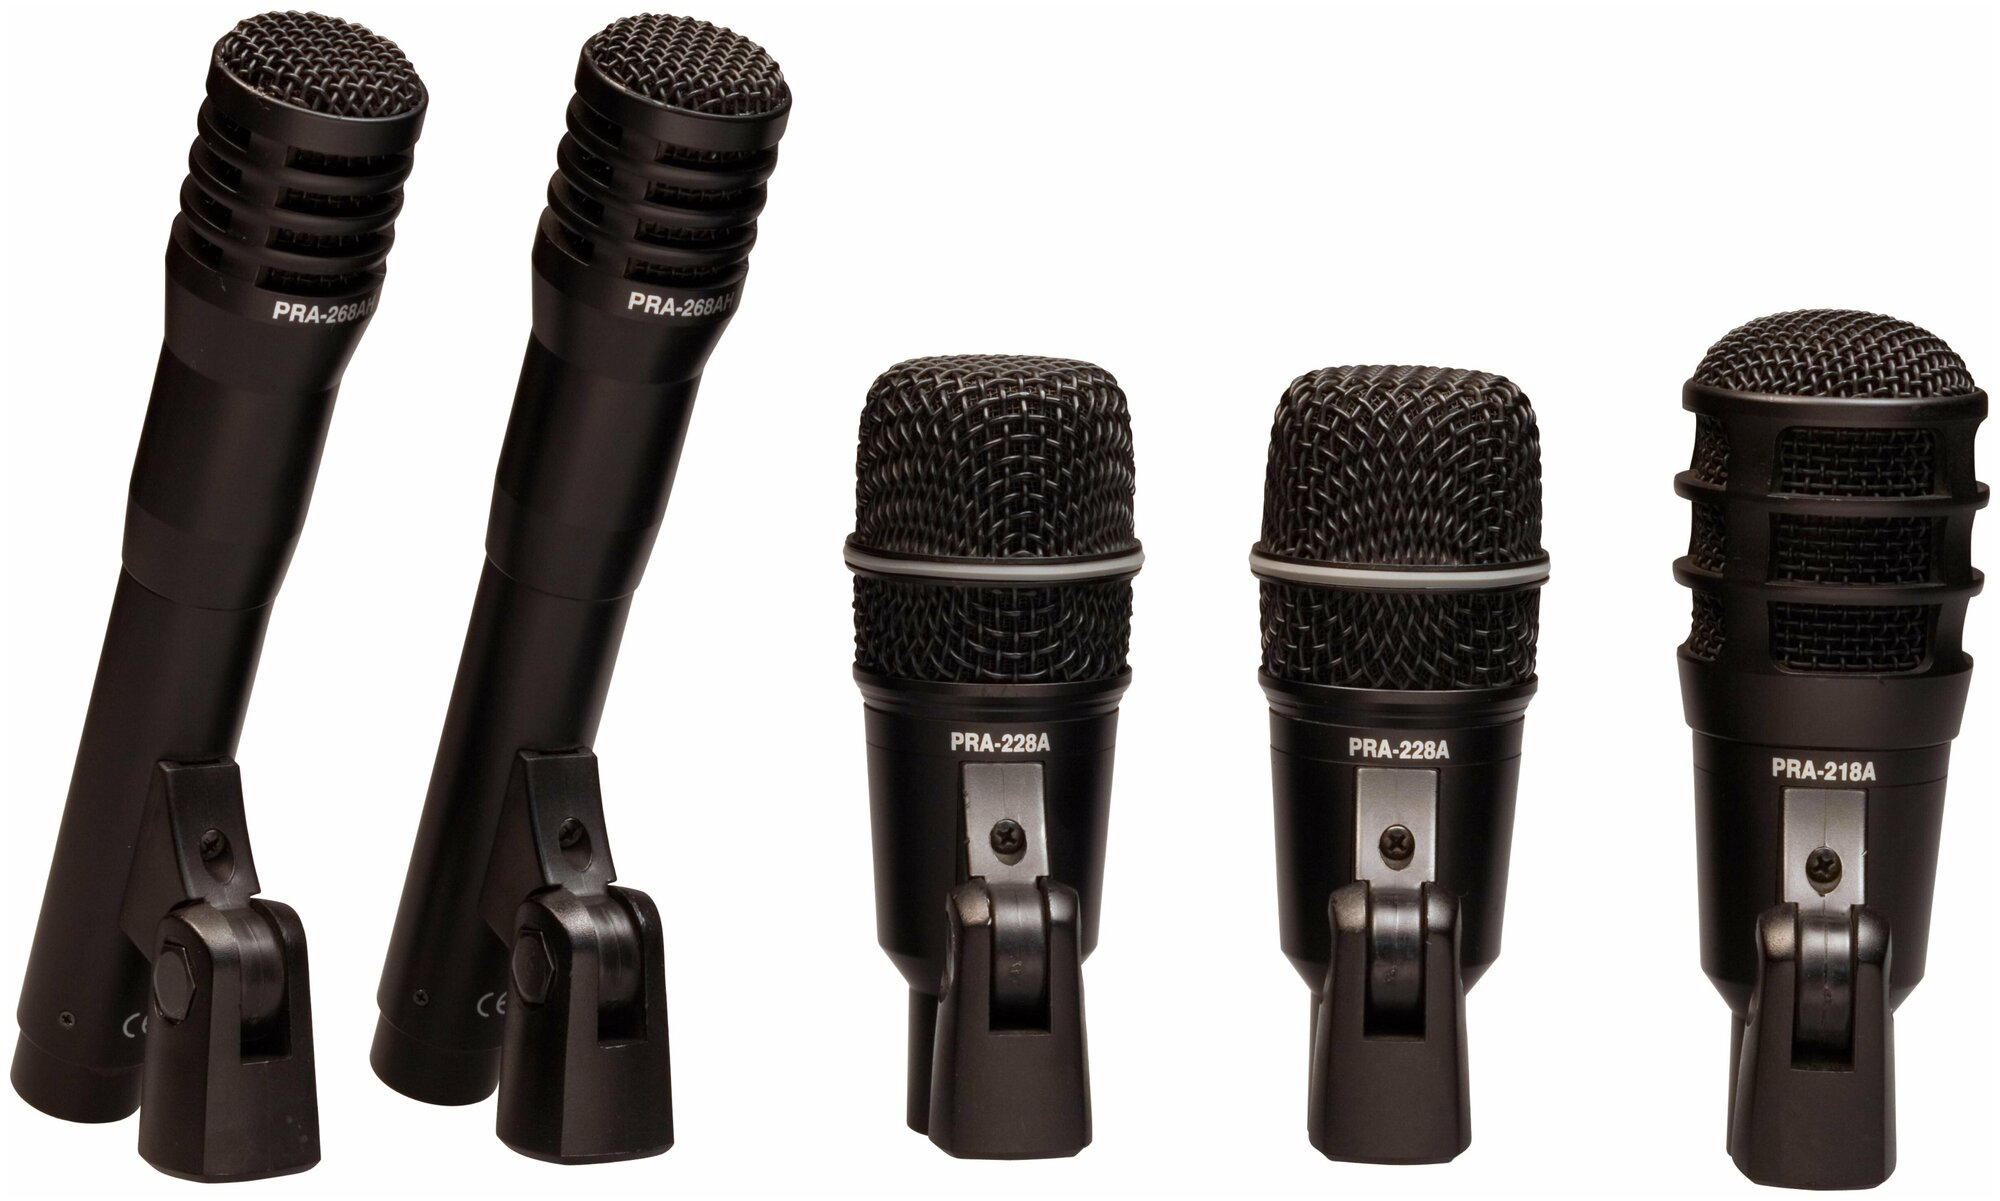 Набор из пяти барабанных микрофонов Superlux DRKA3C2